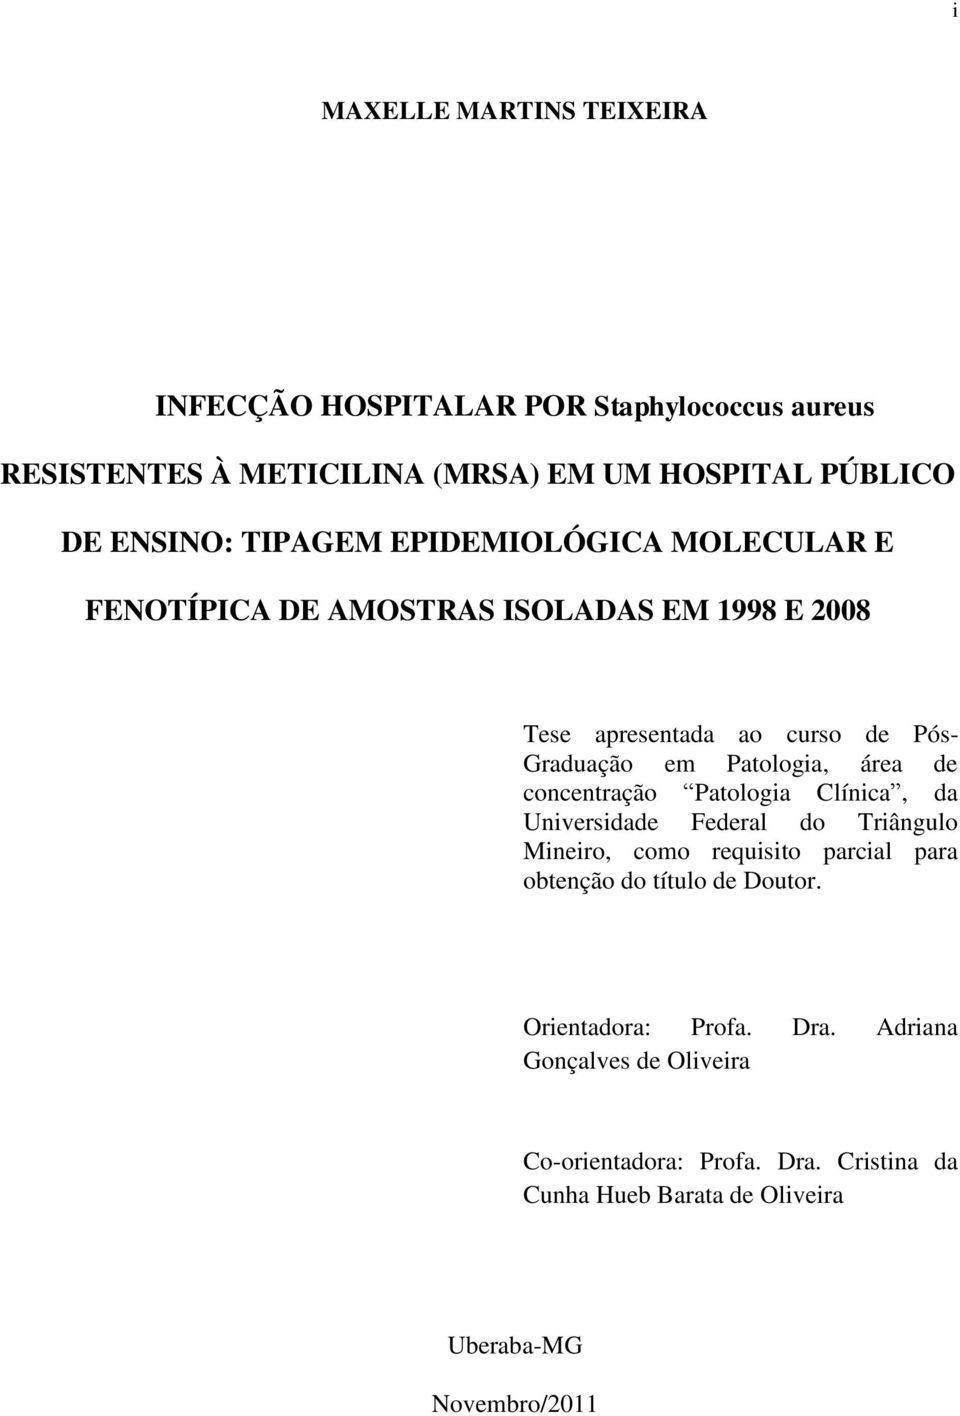 concentração Patologia Clínica, da Universidade Federal do Triângulo Mineiro, como requisito parcial para obtenção do título de Doutor.